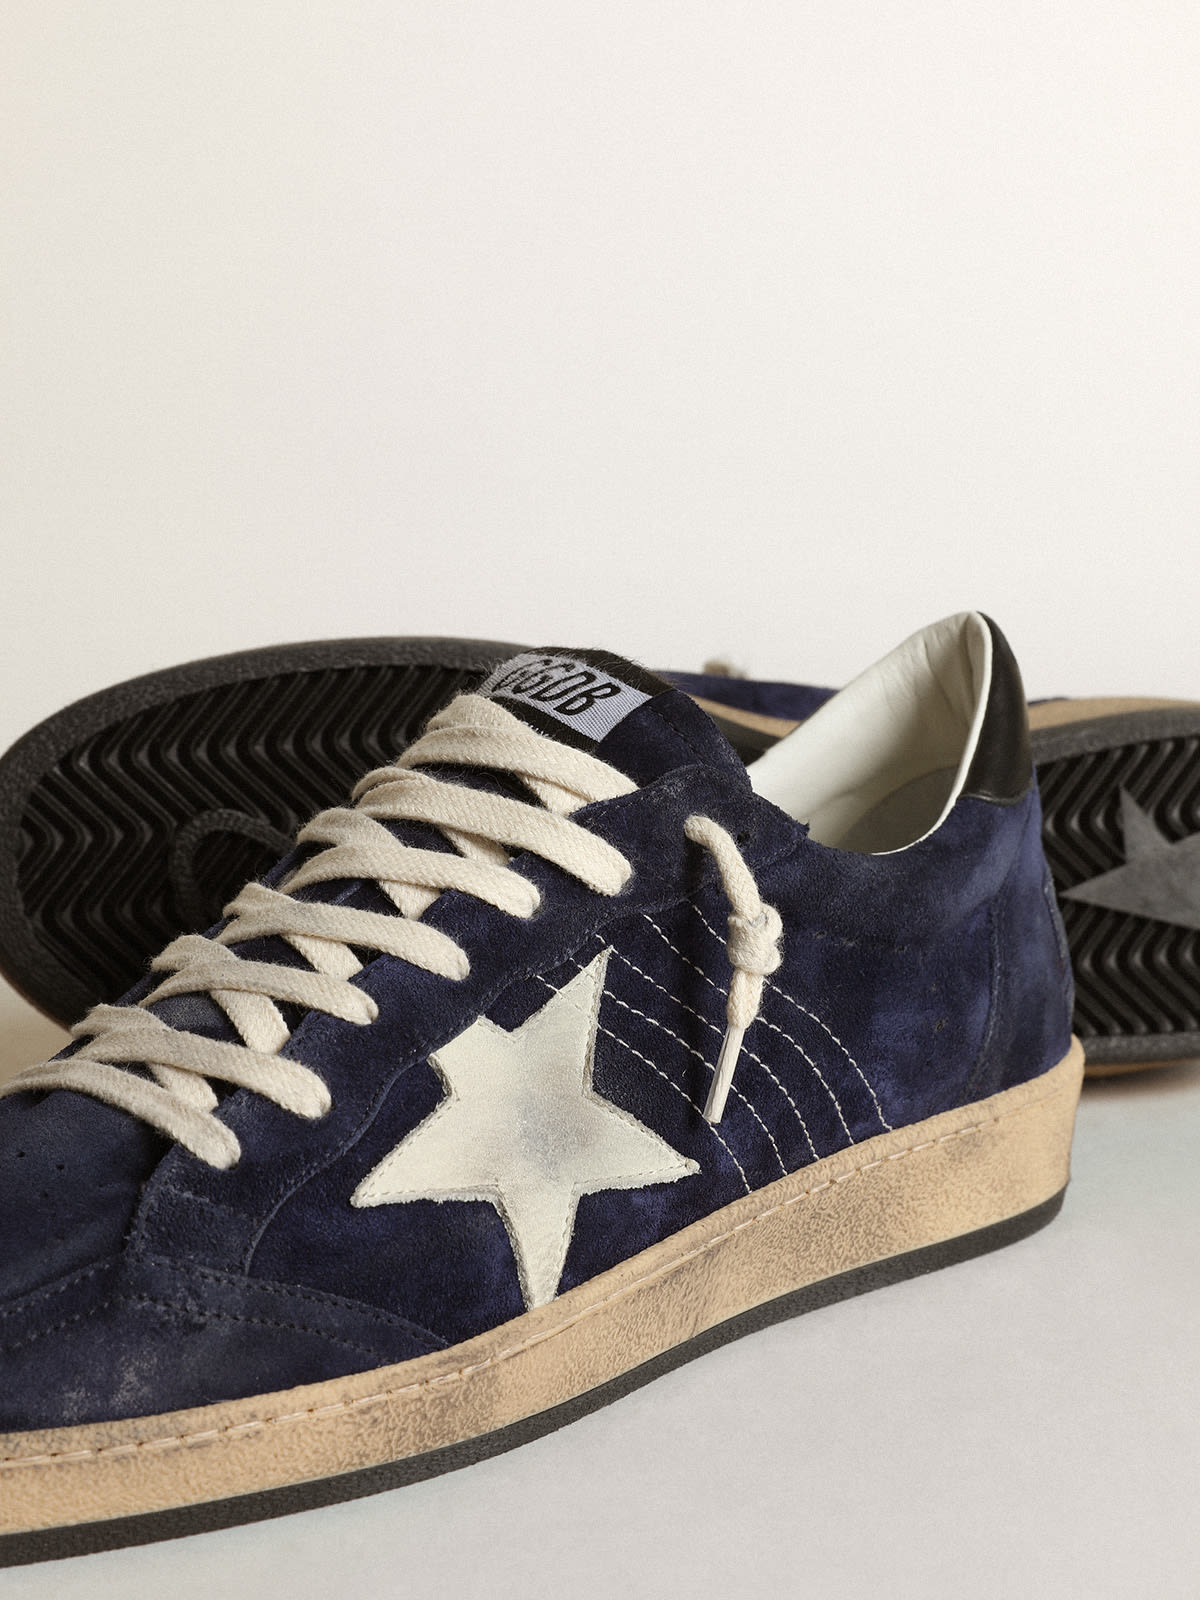 Golden Goose - Sneaker Ball Star in suede blu scuro con stella in nabuk bianco sporco e talloncino in nappa nera in 